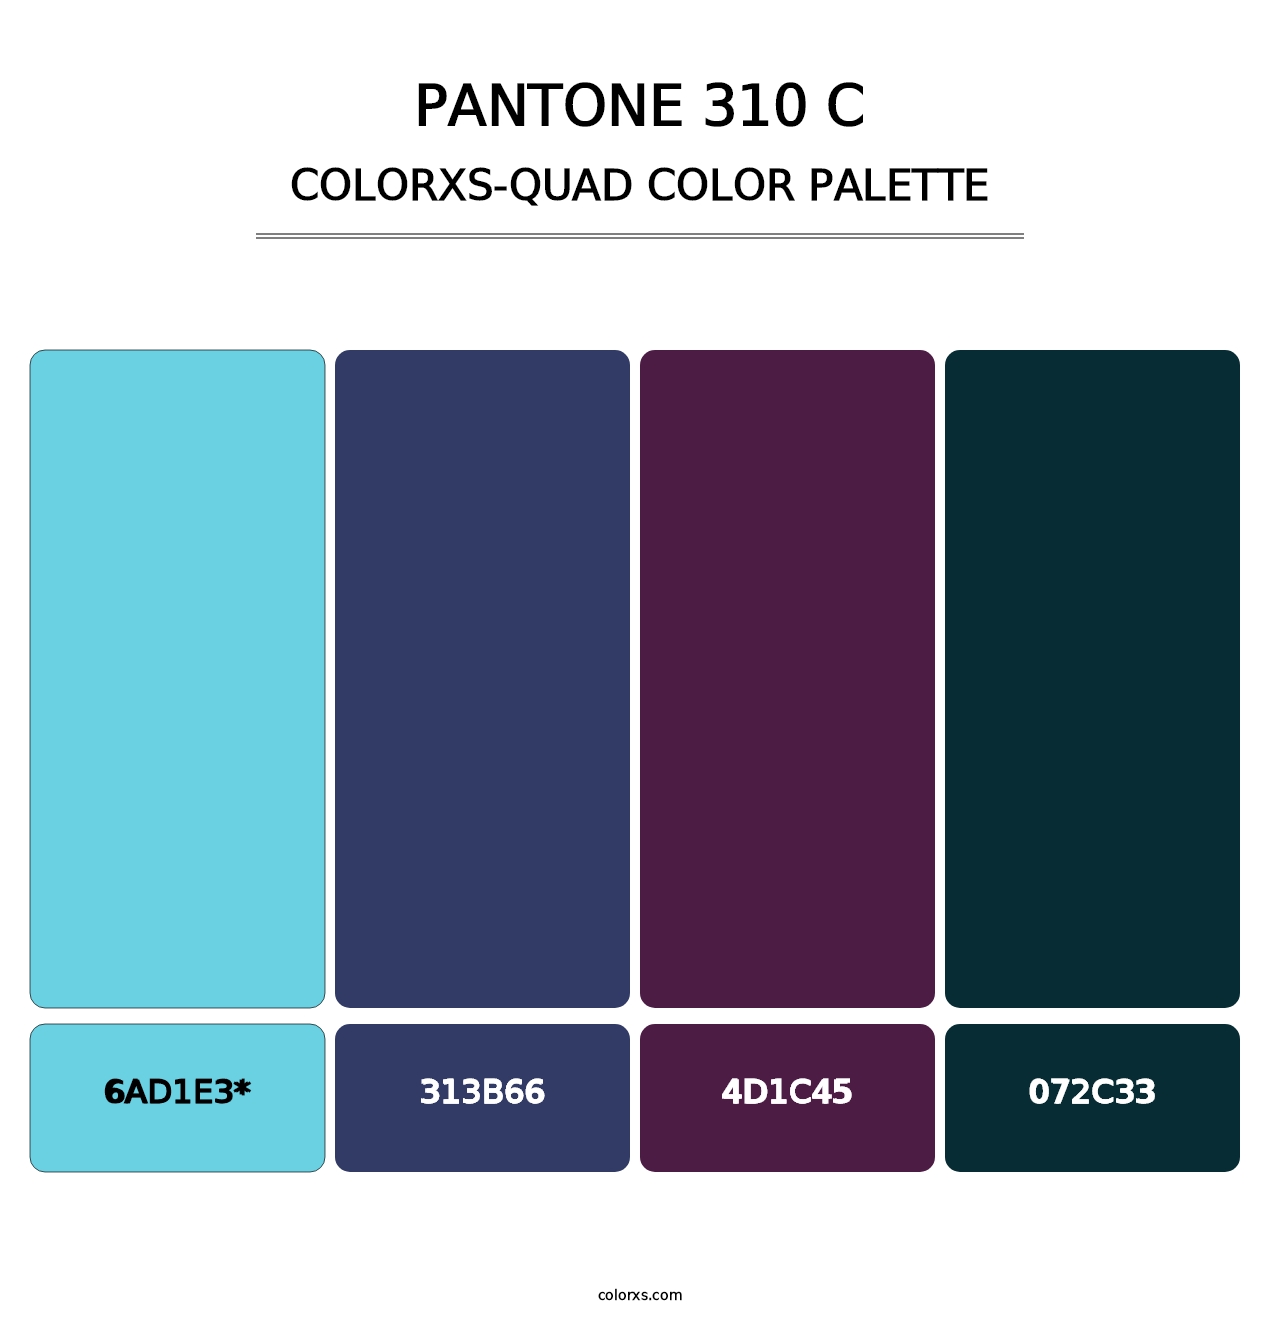 PANTONE 310 C - Colorxs Quad Palette